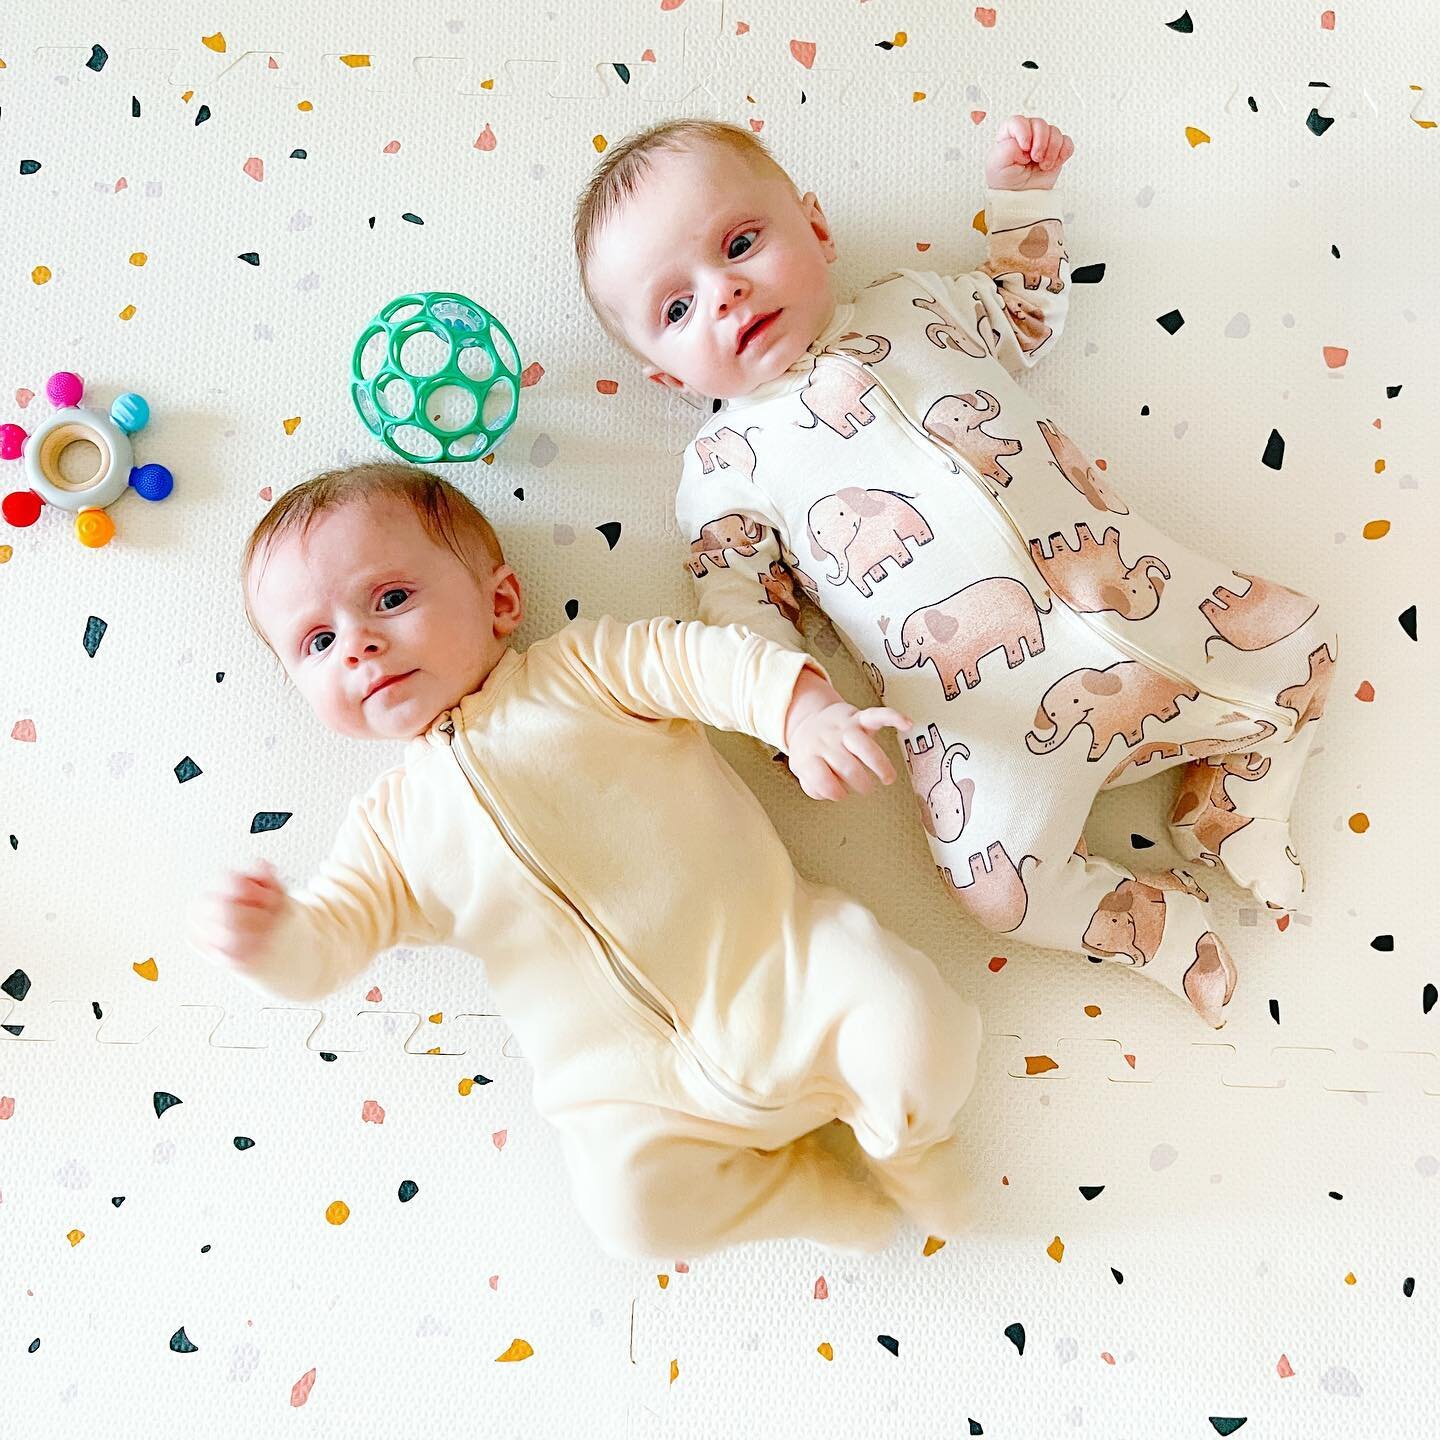 Who let my newborns grow into babies? 👶🏻👶🏻 #twinmom